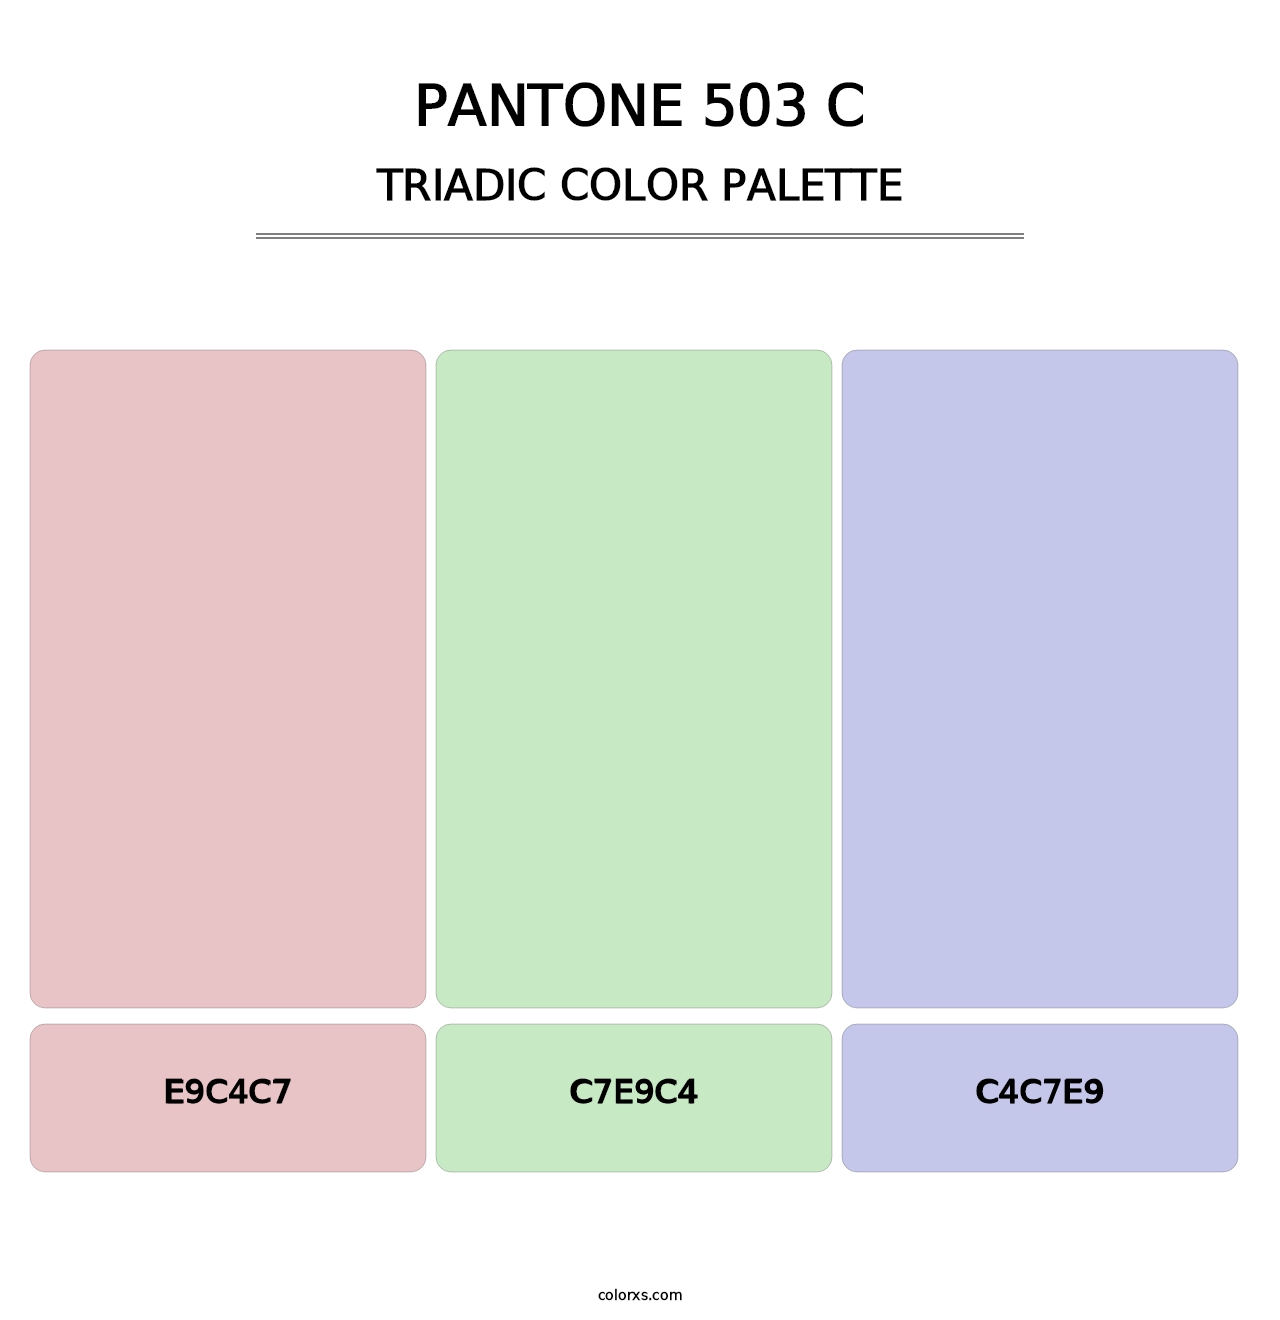 PANTONE 503 C - Triadic Color Palette